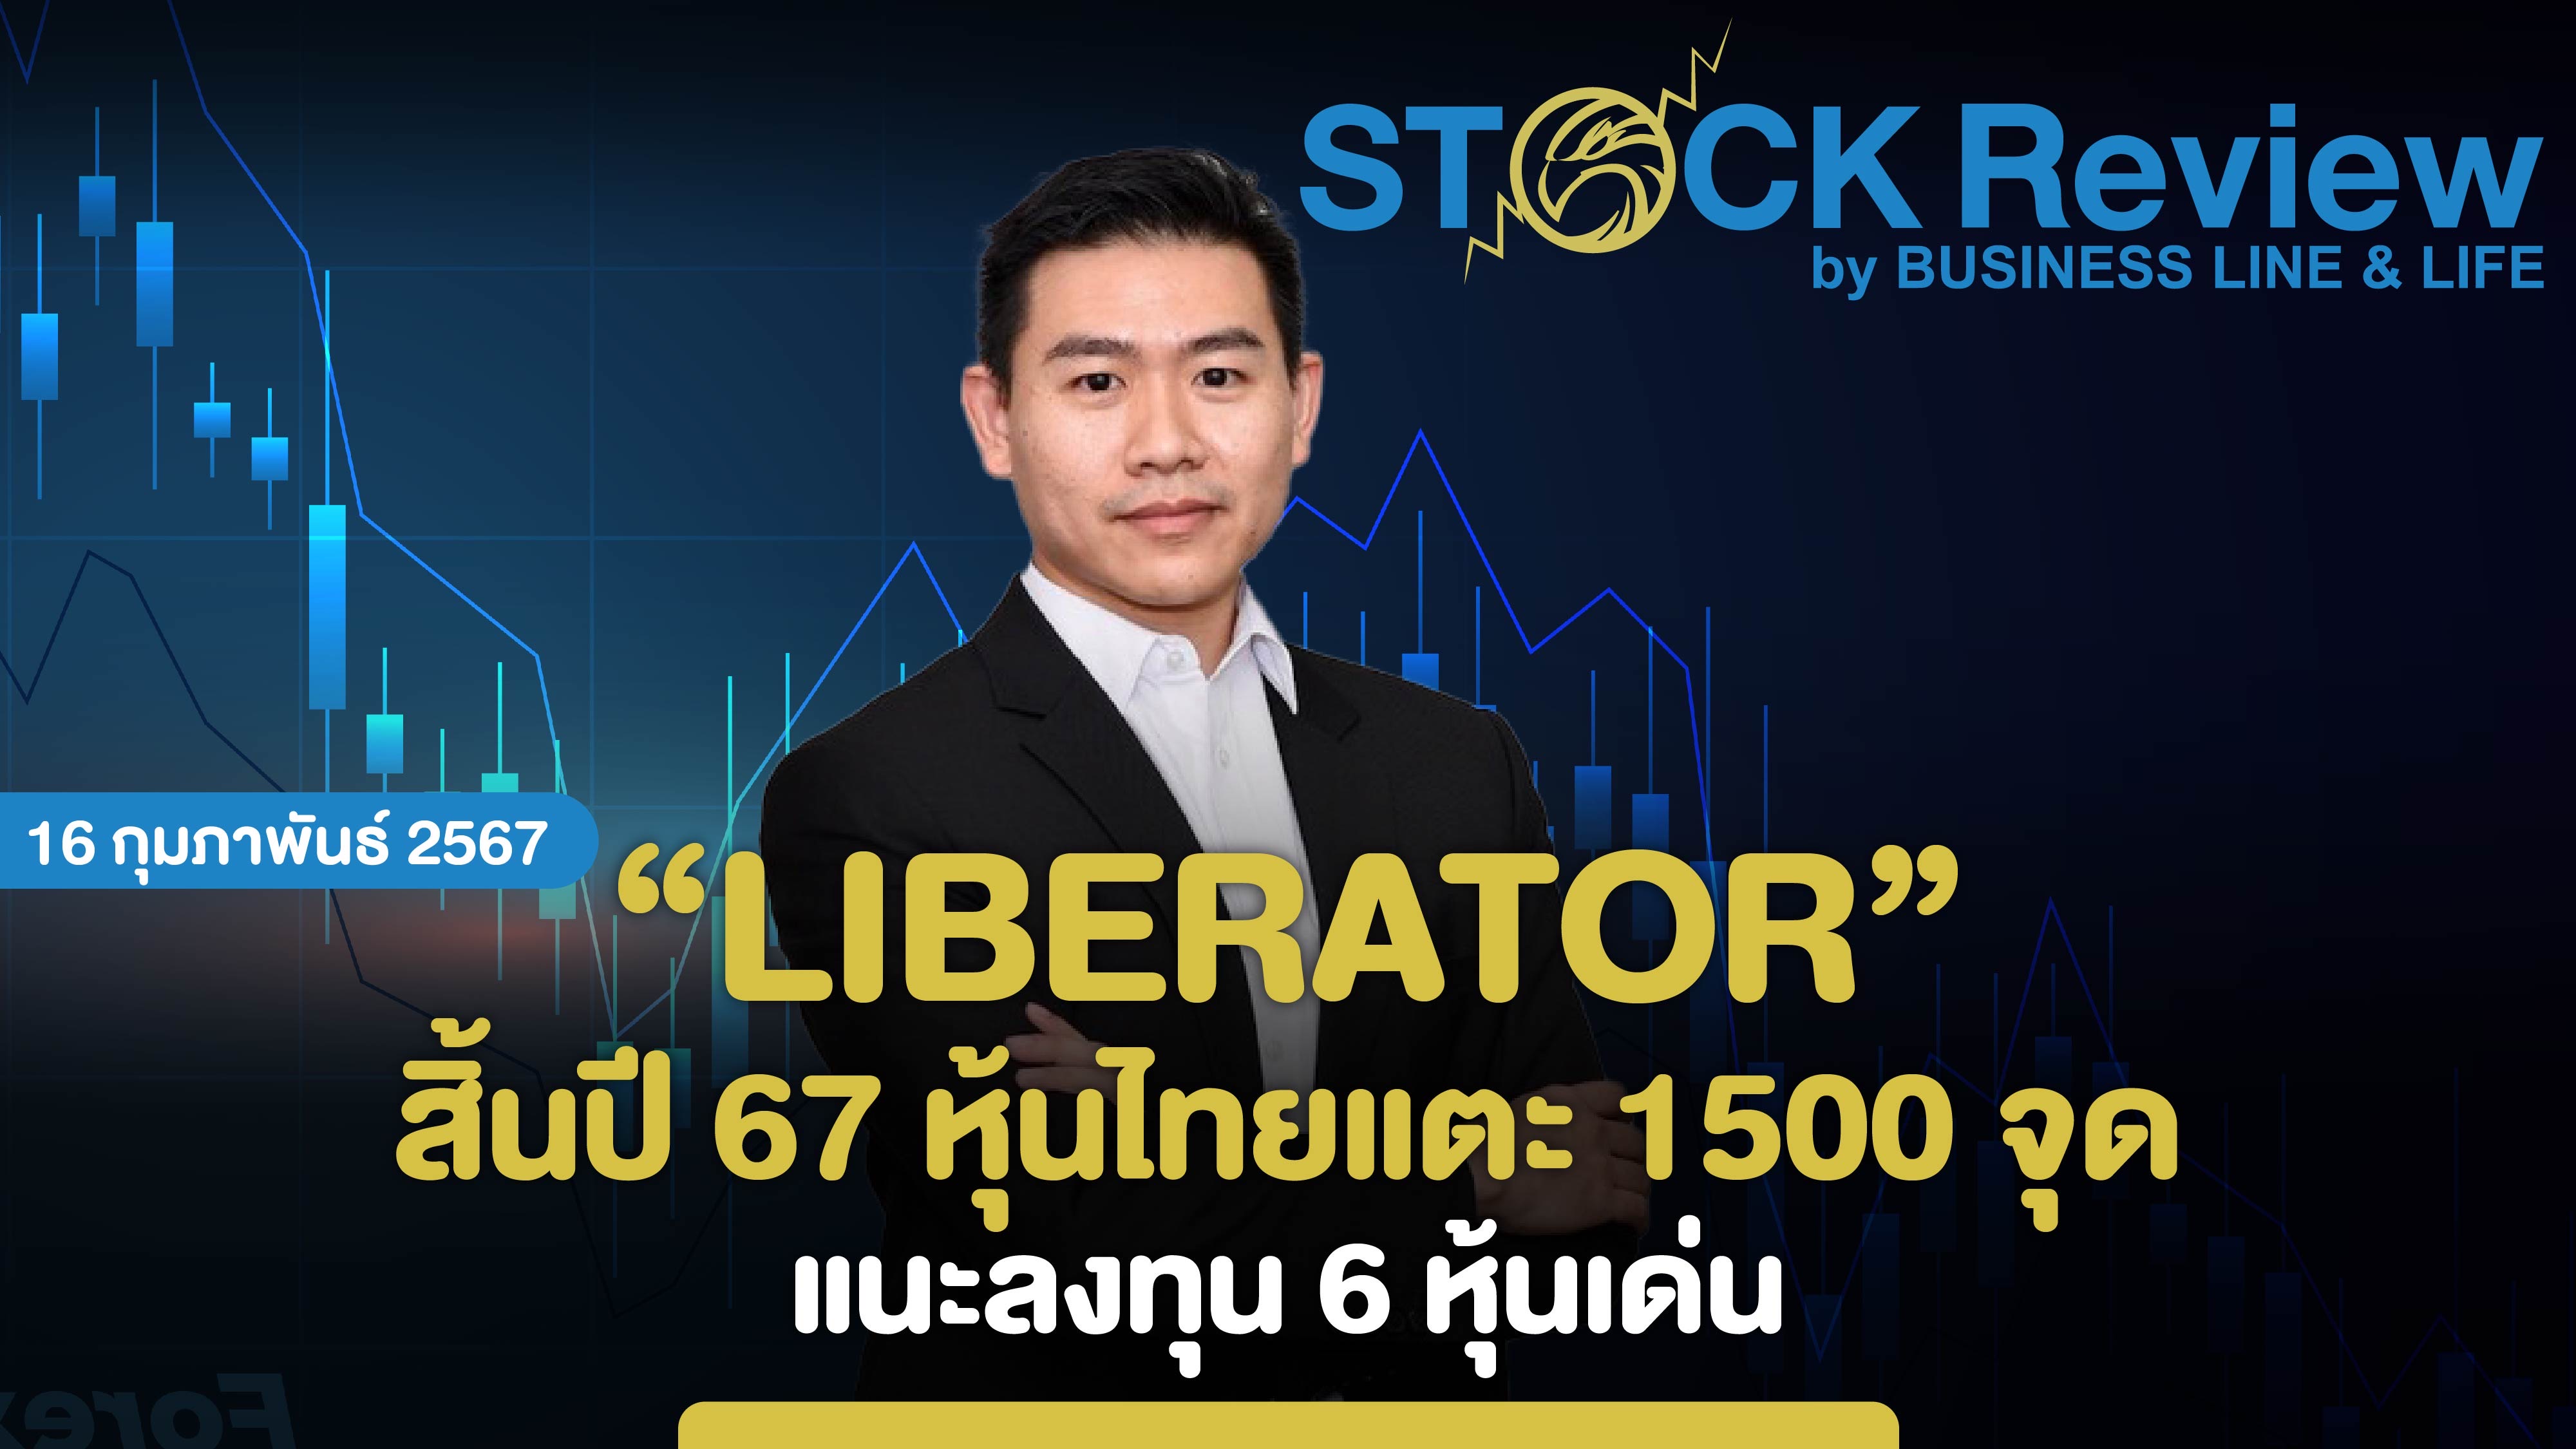 ลิเบอเรเตอร์ สิ้นปี 67 หุ้นไทยแตะ 1500 จุด แนะลงทุน 6 หุ้นเด่น